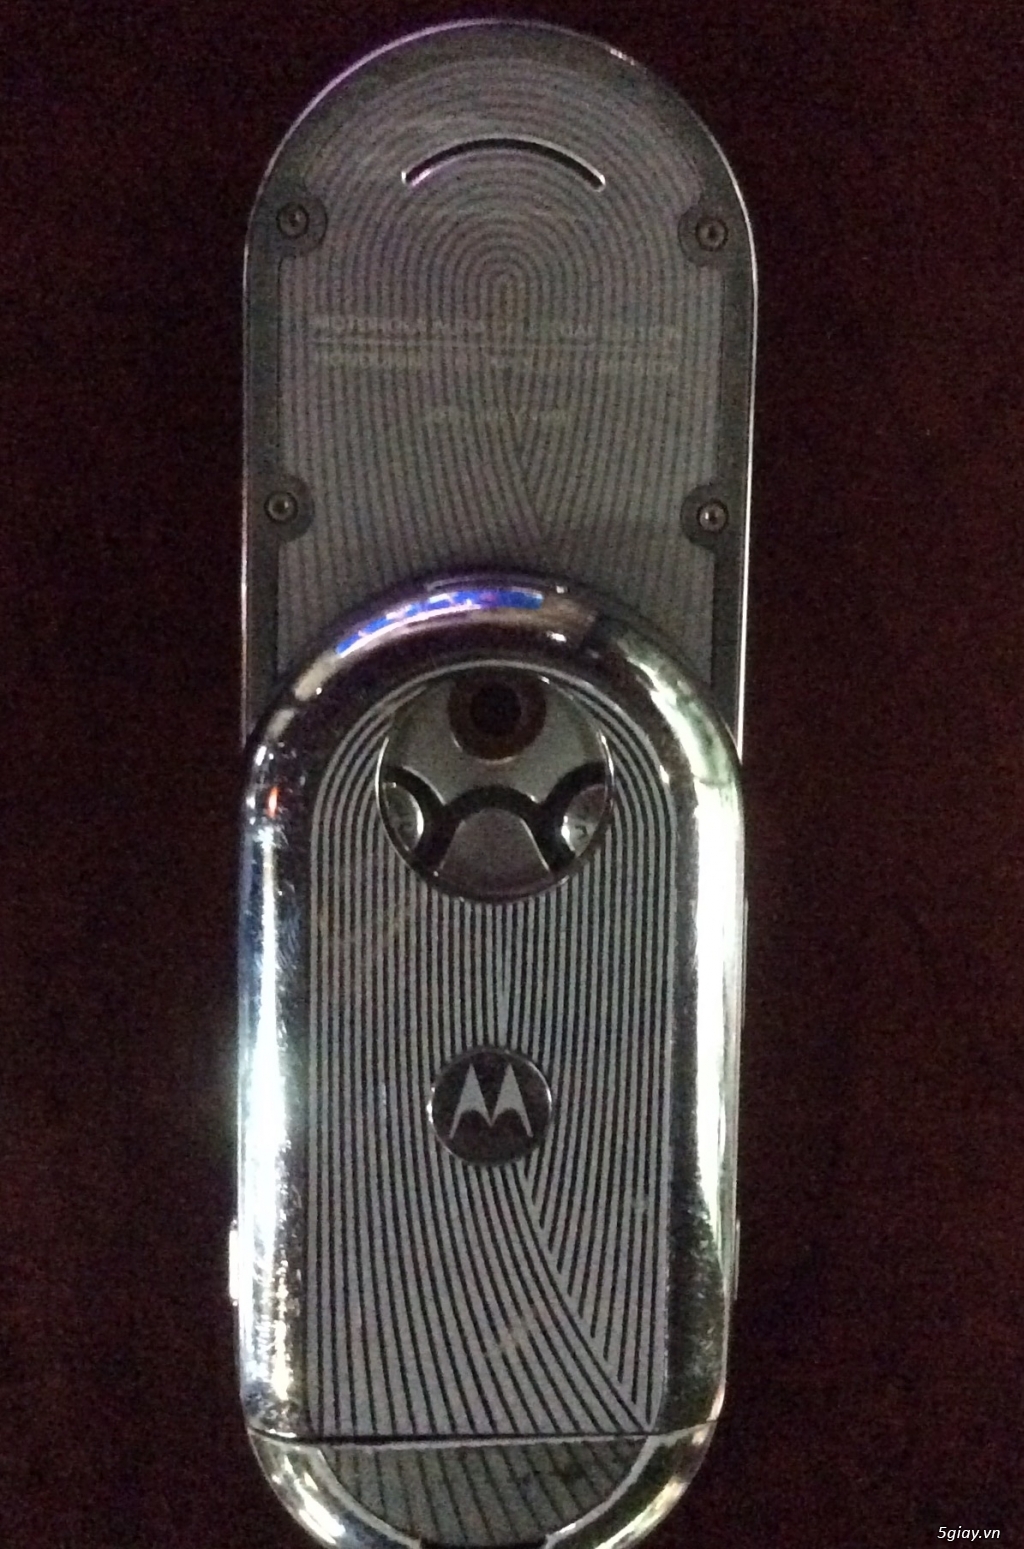 Motorola aura - đẳng cấp ko thể bị nhái hay bi dựng - 2